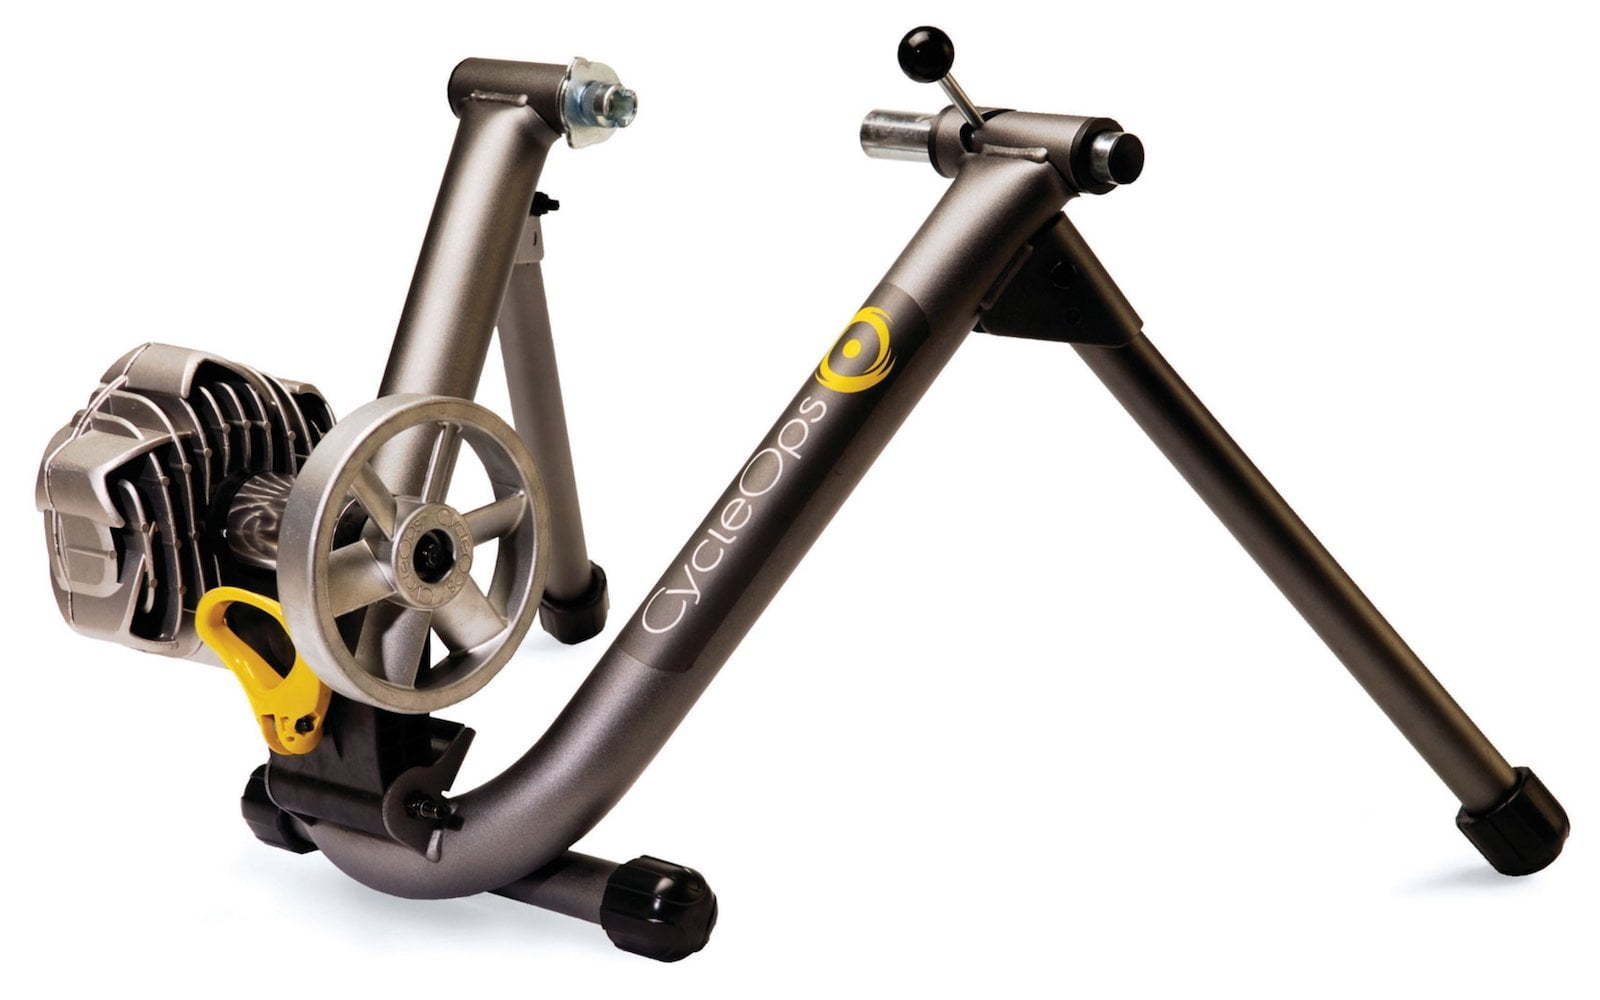 Đầu tư thiết bị chơi Zwift - [Phần 1] Lựa chọn trainer - cycleops fluid2 bicycle indoor trainer